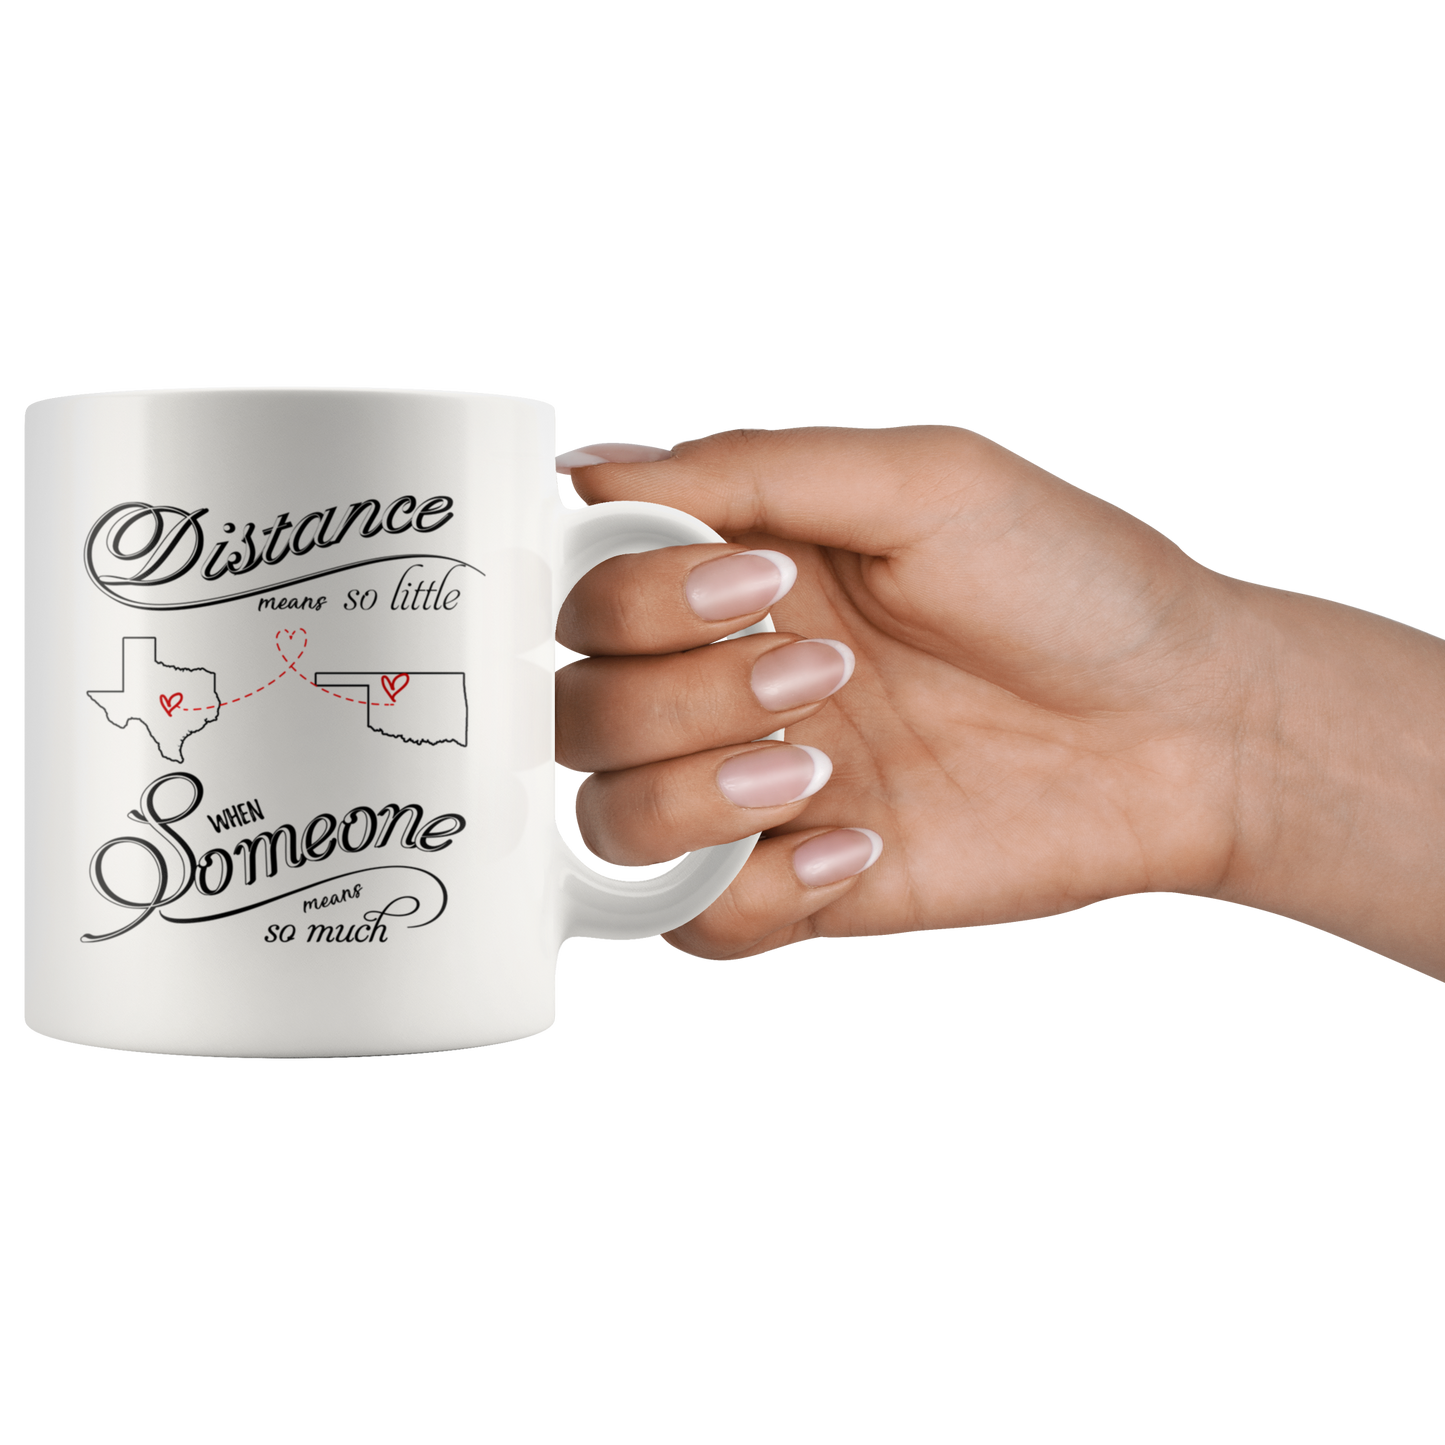 M-20484863-sp-23940 - [ Texas | Oklahoma ]Mothers Day Coffee Mug Texas Oklahoma Distance Means So Litt